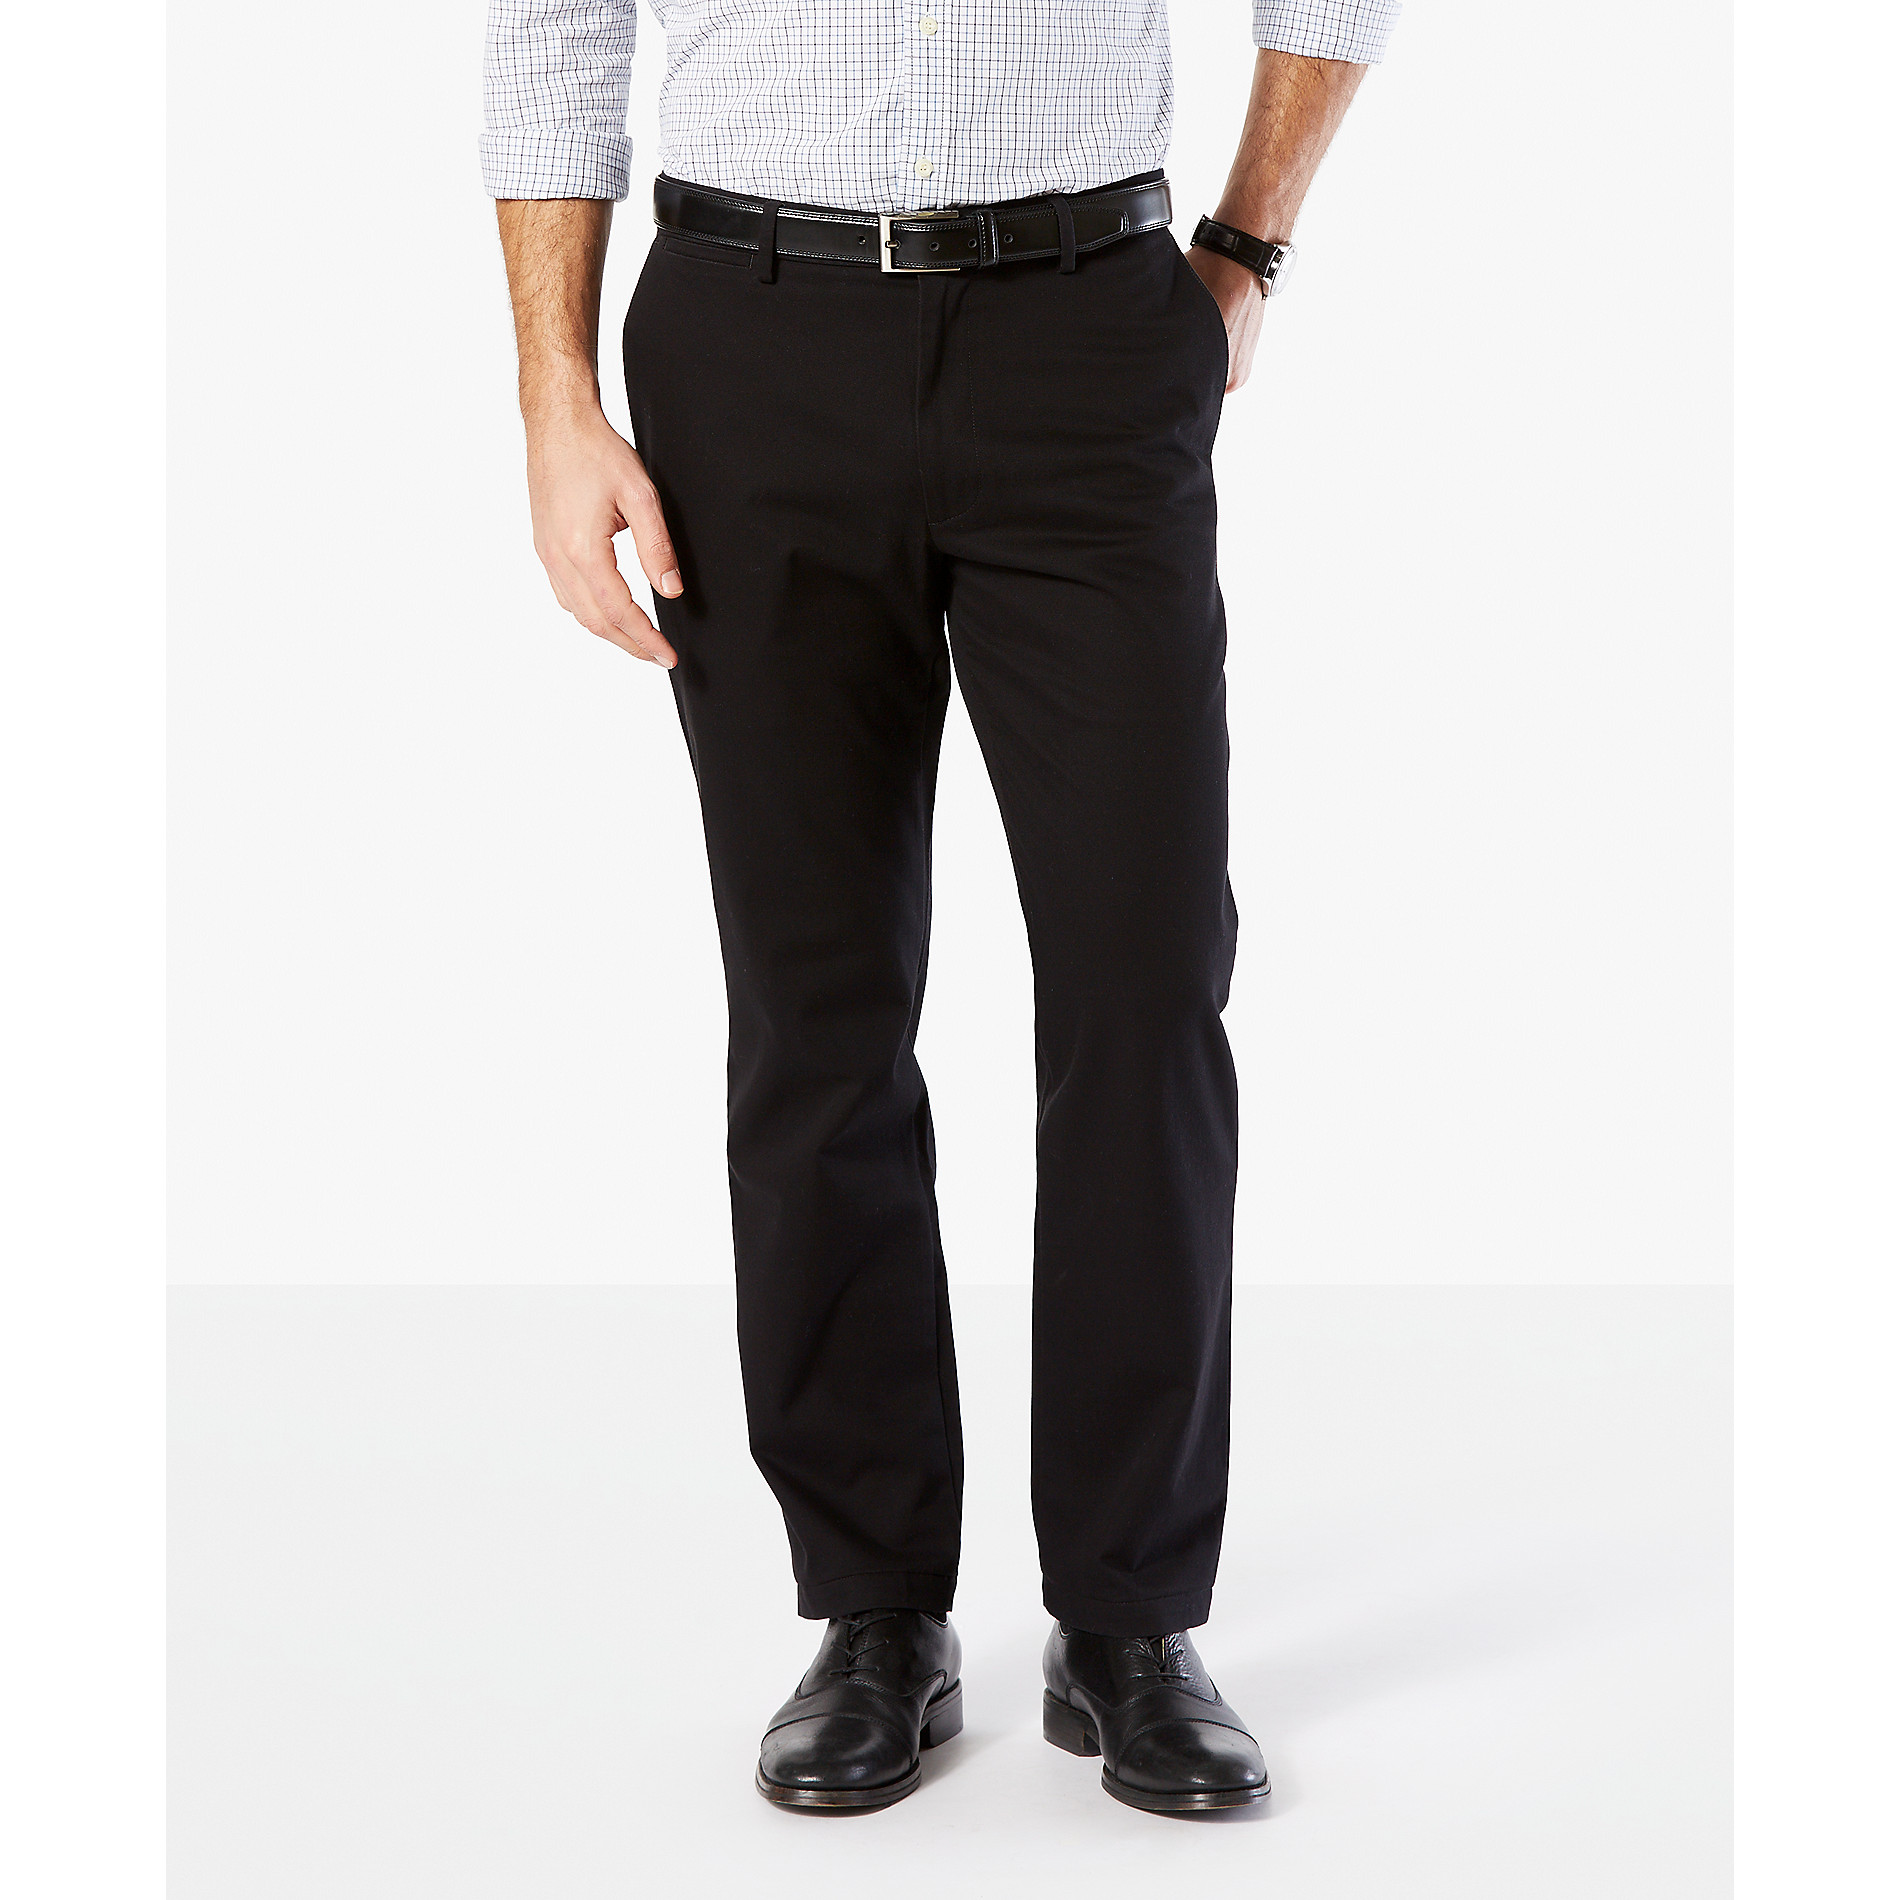 Dockers Men's Straight Fit Signature Khaki Lux Cotton Stretch Pants D2